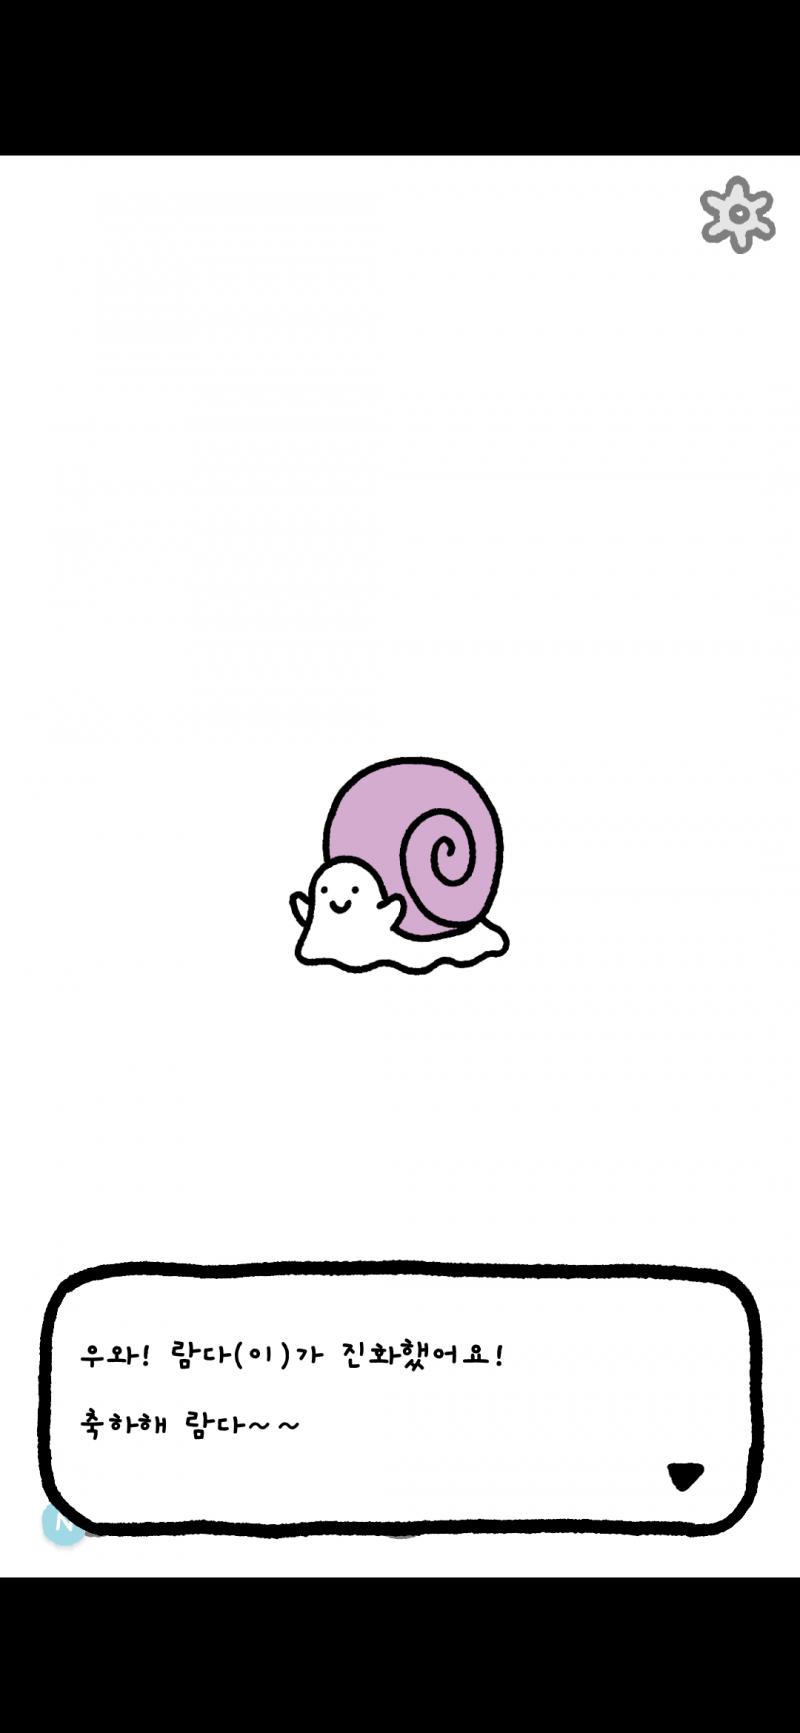 오늘 진화했어 상상도 못한 달팽이지만 달팽이도 귀엽네